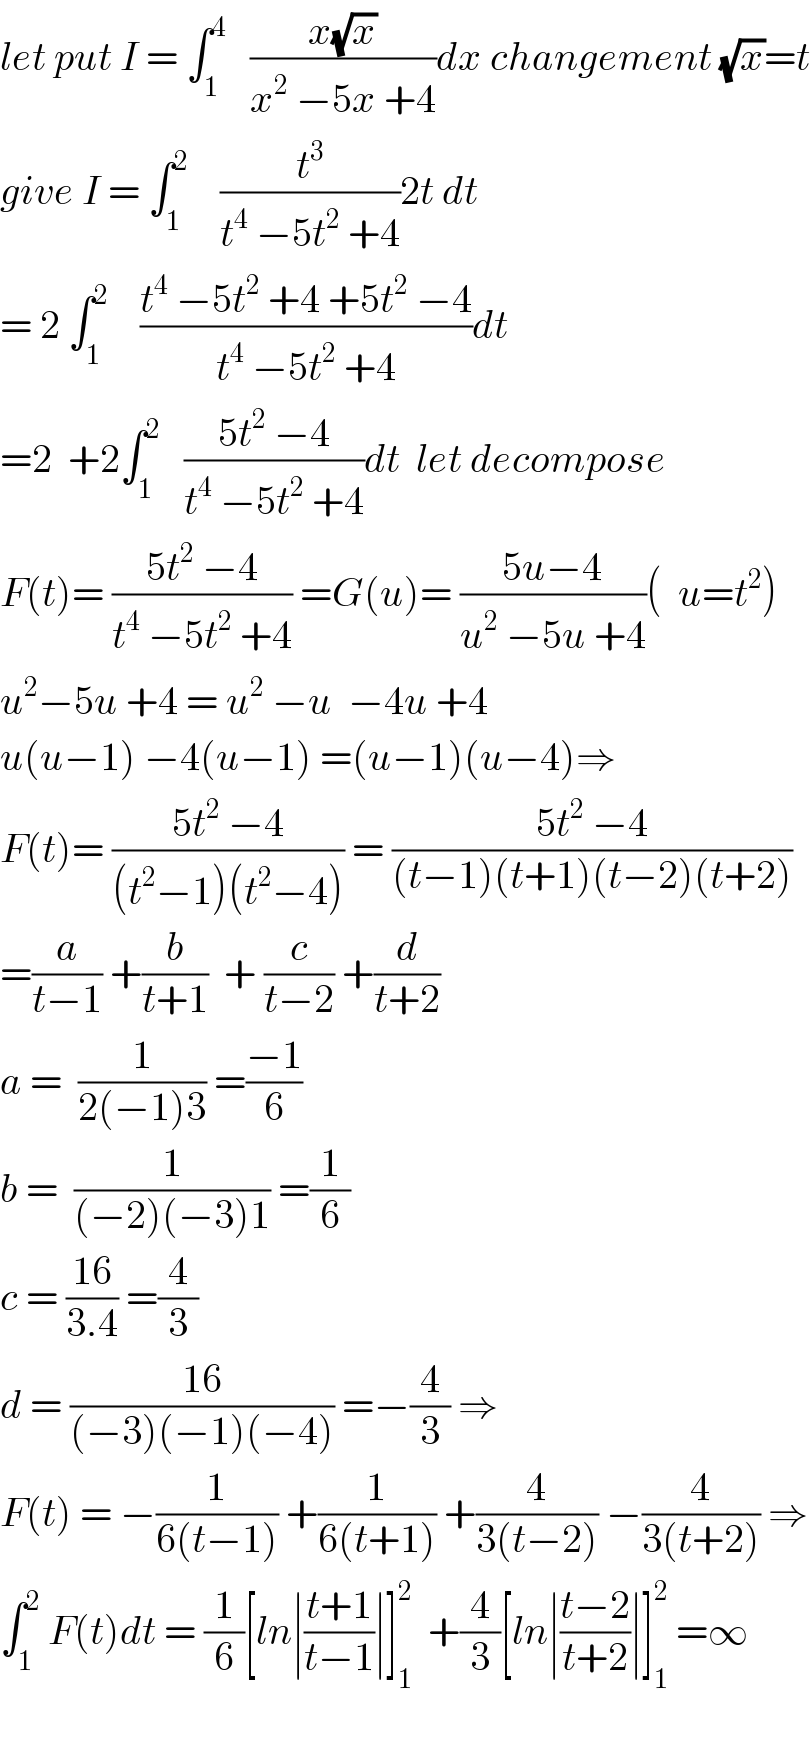 let put I = ∫_1 ^4    ((x(√x))/(x^2  −5x +4))dx changement (√x)=t  give I = ∫_1 ^2     (t^3 /(t^4  −5t^2  +4))2t dt  = 2 ∫_1 ^2     ((t^4  −5t^2  +4 +5t^2  −4)/(t^4  −5t^2  +4))dt  =2  +2∫_1 ^2    ((5t^2  −4)/(t^4  −5t^2  +4))dt  let decompose  F(t)= ((5t^2  −4)/(t^4  −5t^2  +4)) =G(u)= ((5u−4)/(u^2  −5u +4))(  u=t^2 )  u^2 −5u +4 = u^2  −u  −4u +4  u(u−1) −4(u−1) =(u−1)(u−4)⇒  F(t)= ((5t^2  −4)/((t^2 −1)(t^2 −4))) = ((5t^2  −4)/((t−1)(t+1)(t−2)(t+2)))  =(a/(t−1)) +(b/(t+1))  + (c/(t−2)) +(d/(t+2))  a =  (1/(2(−1)3)) =((−1)/6)  b =  (1/((−2)(−3)1)) =(1/6)  c = ((16)/(3.4)) =(4/3)  d = ((16)/((−3)(−1)(−4))) =−(4/3) ⇒  F(t) = −(1/(6(t−1))) +(1/(6(t+1))) +(4/(3(t−2))) −(4/(3(t+2))) ⇒  ∫_1 ^2  F(t)dt = (1/6)[ln∣((t+1)/(t−1))∣]_1 ^2   +(4/3)[ln∣((t−2)/(t+2))∣]_1 ^2  =∞    